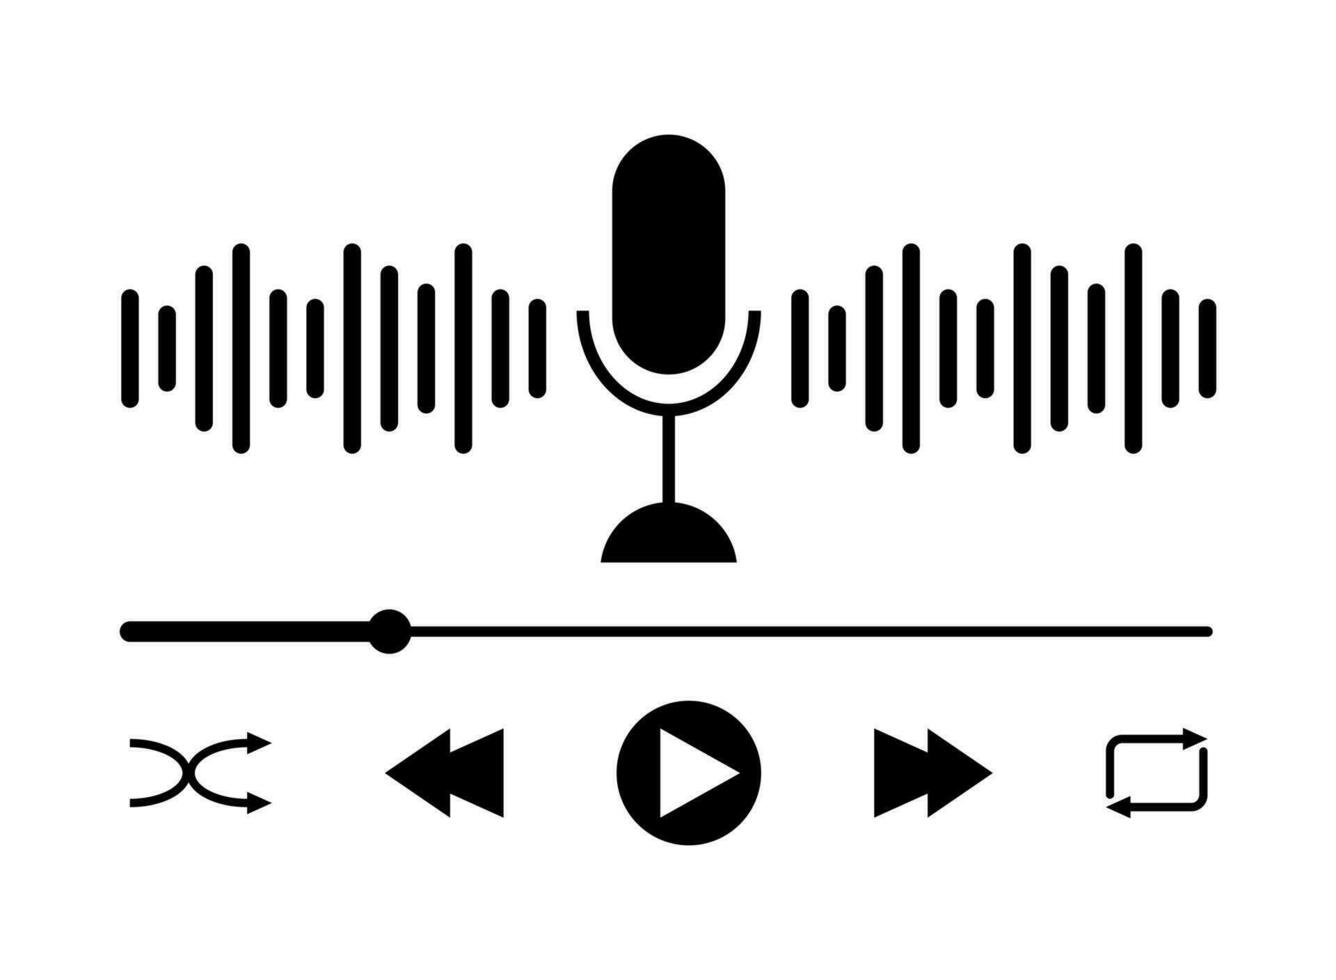 sonido ola icono, podcast jugador interfaz, música símbolo, sonido ola, cargando Progreso bar y botones. micrófono sonido ola vector ilustración.